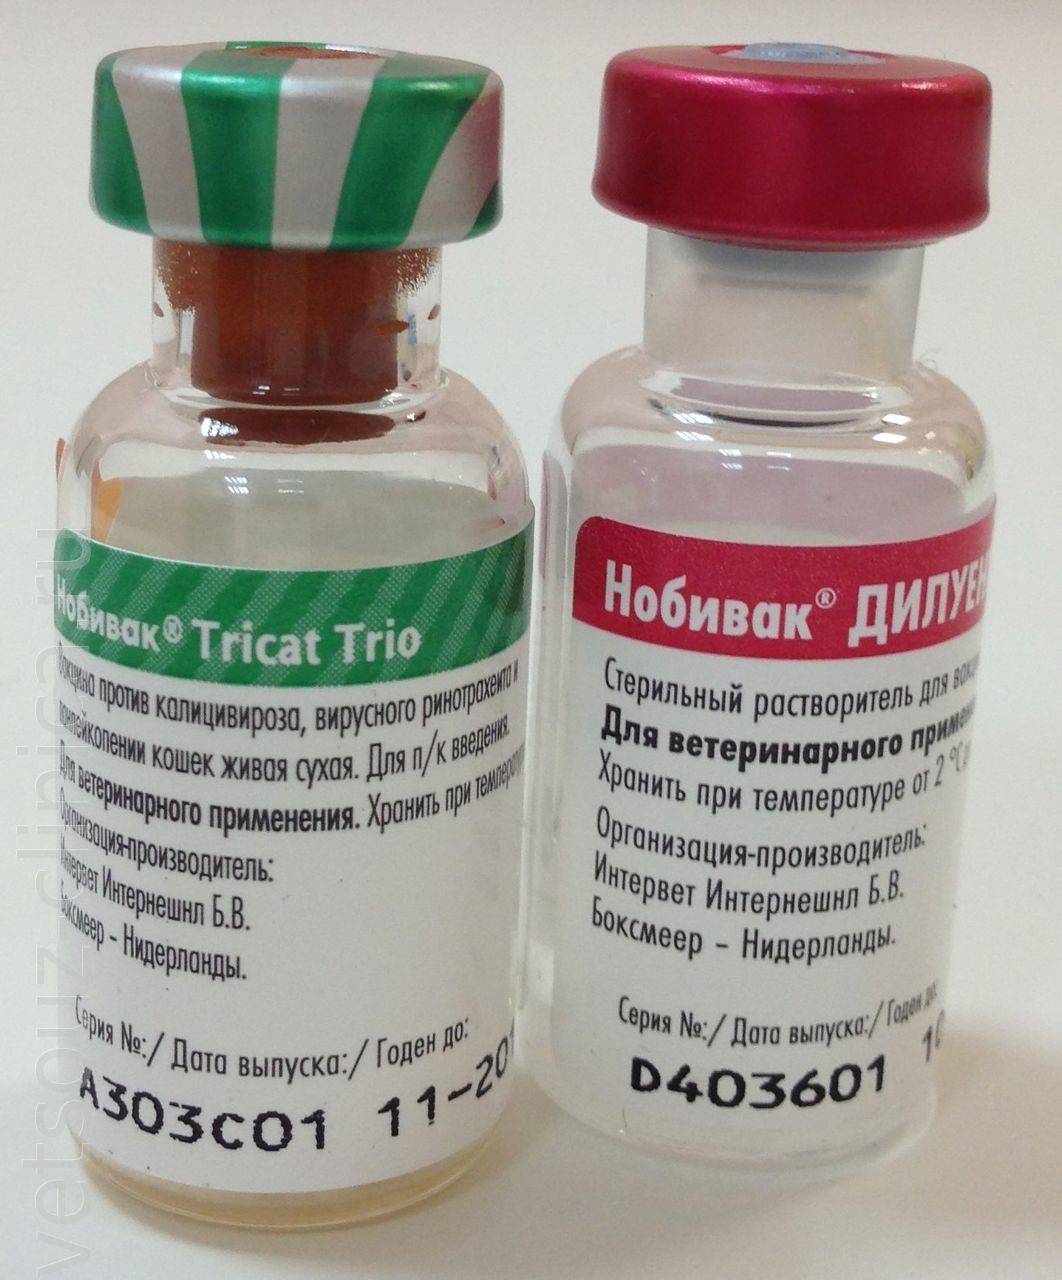 Нобивак tricat trio, комплексная вакцина для кошек